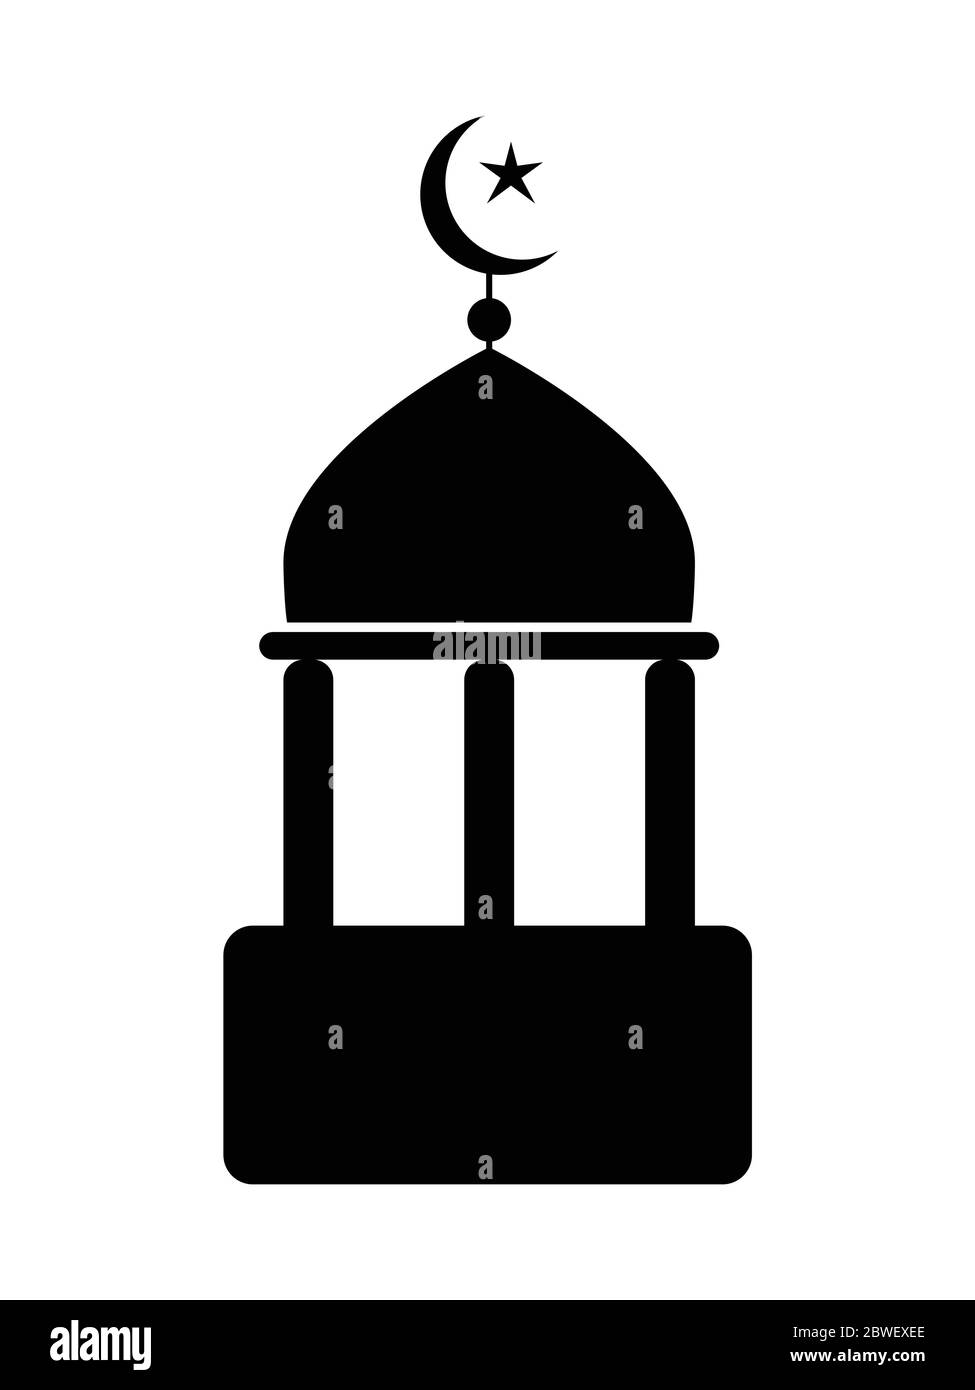 Moschee-Ikone mit Halbmond und Stern. Schwarz-weiß-Piktogramm zeigt einfache islamische Moschee Ort der Anbetung. EPS-Vektor Stock Vektor